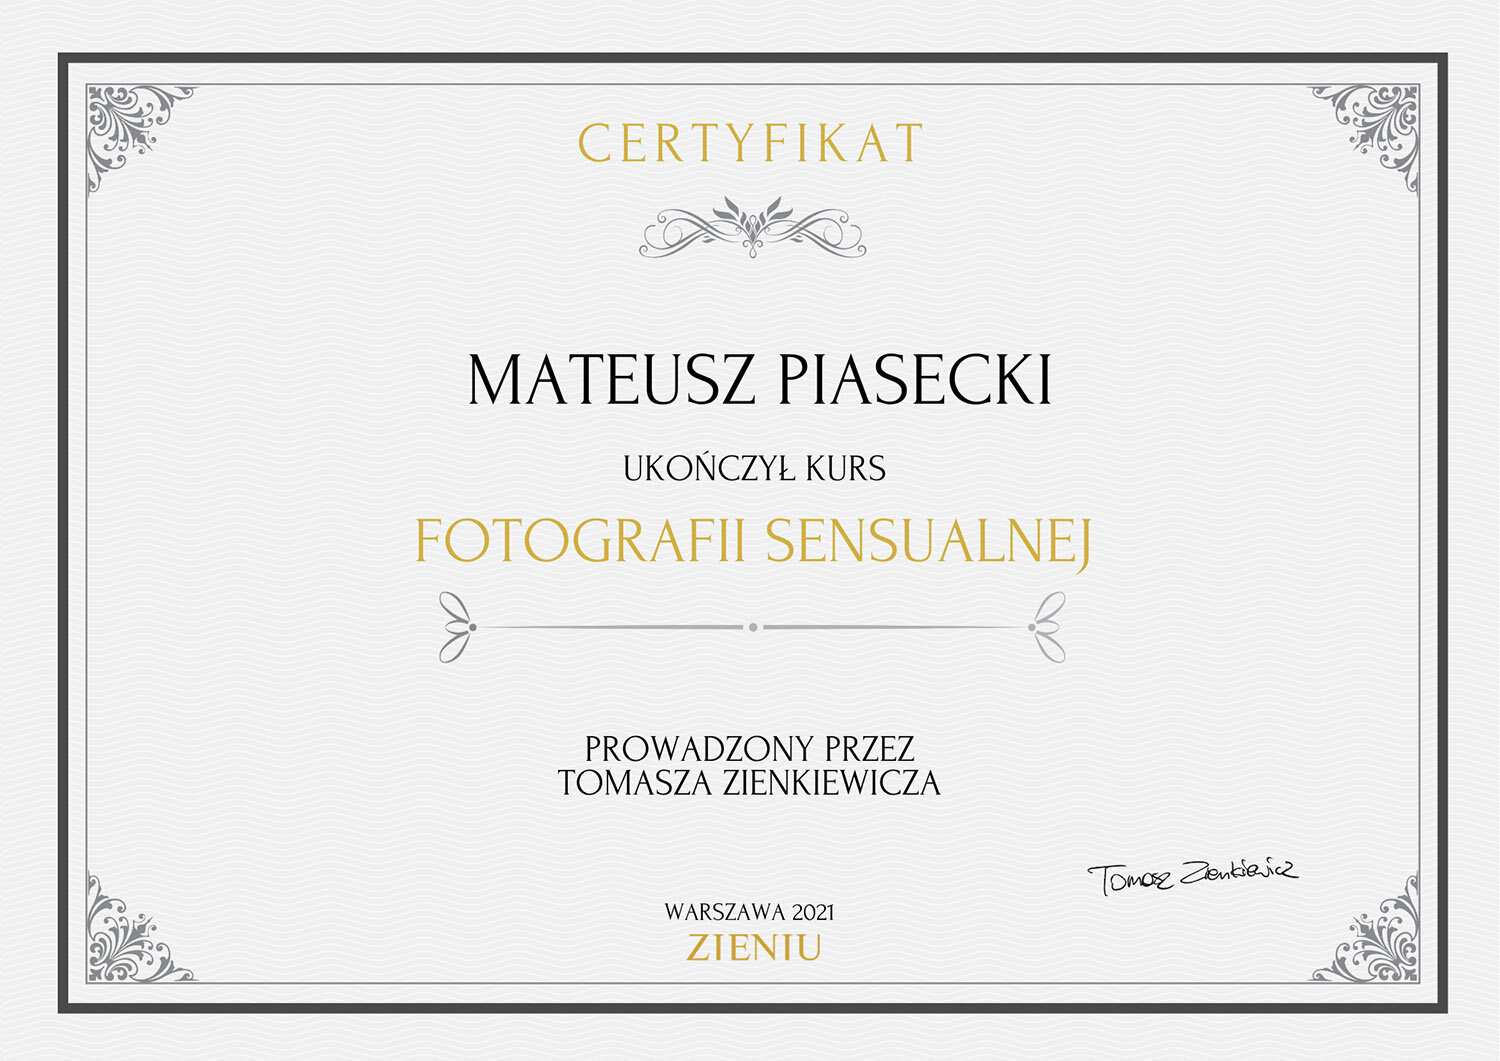 Certyfikat-Mateusz-Piasecki-fotografia-sensialna-zieniu.jpg